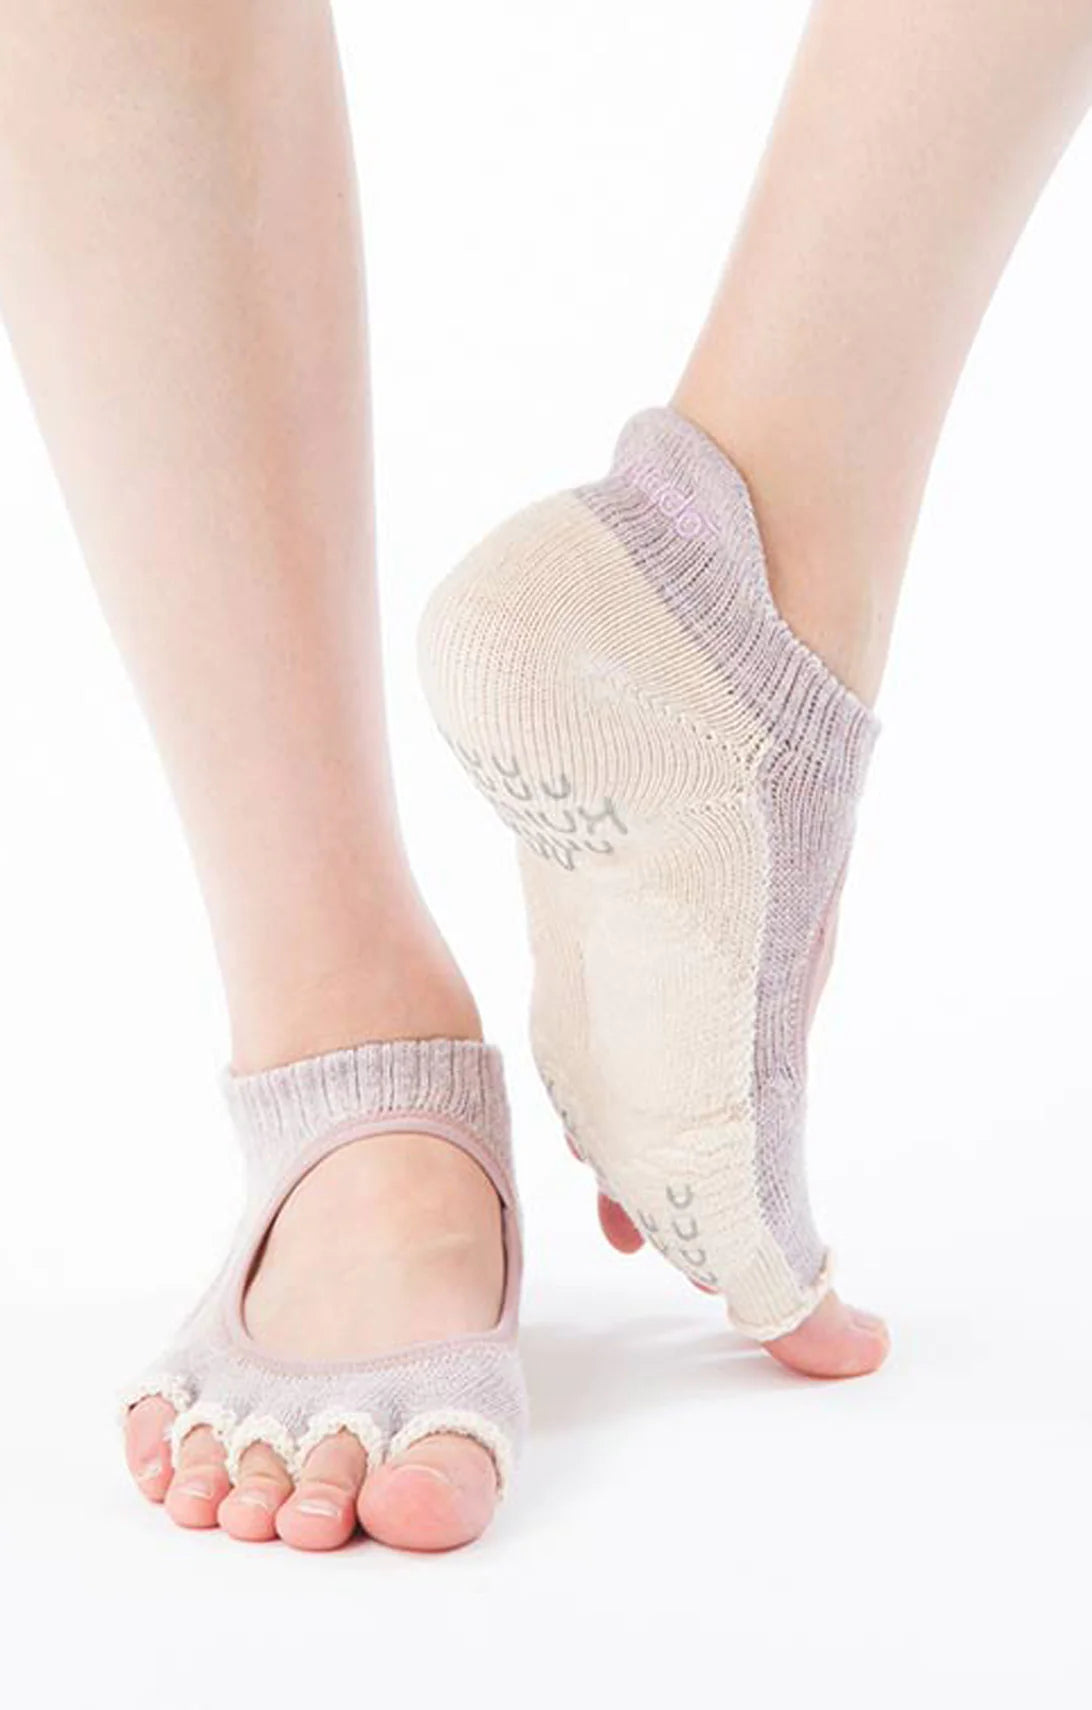 4 Pairs Yoga Socks for Women Non Slip Grip Socks Half Toe Grip